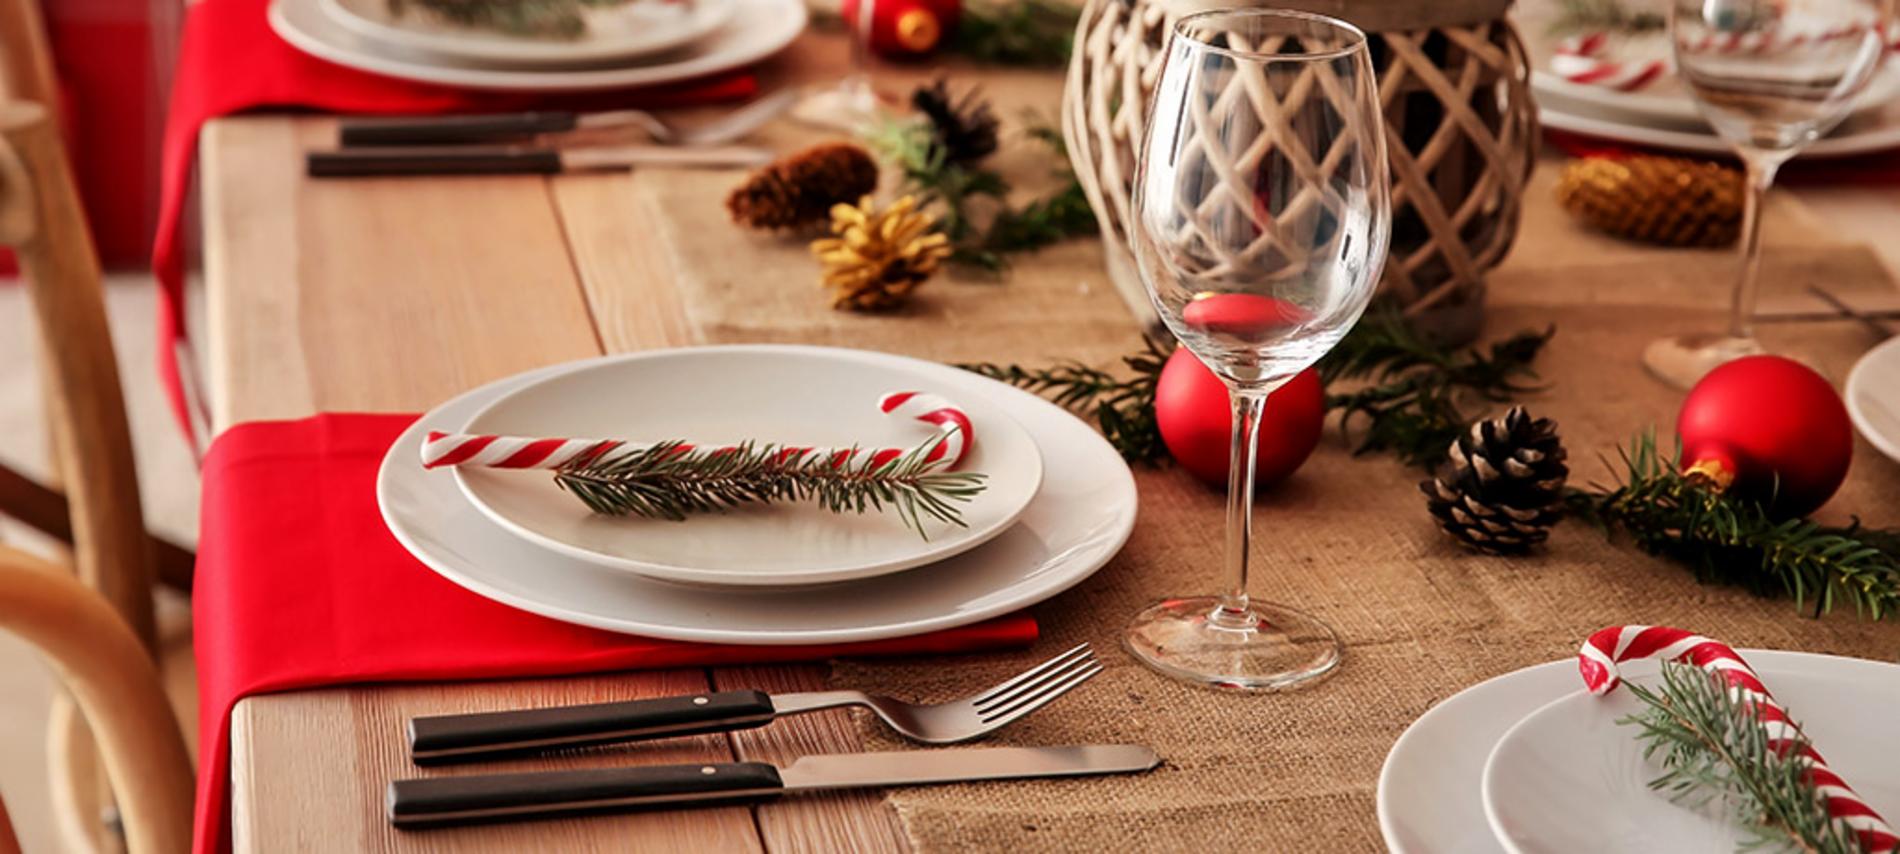 Decora tu mesa navideña y sorprende a tus invitados